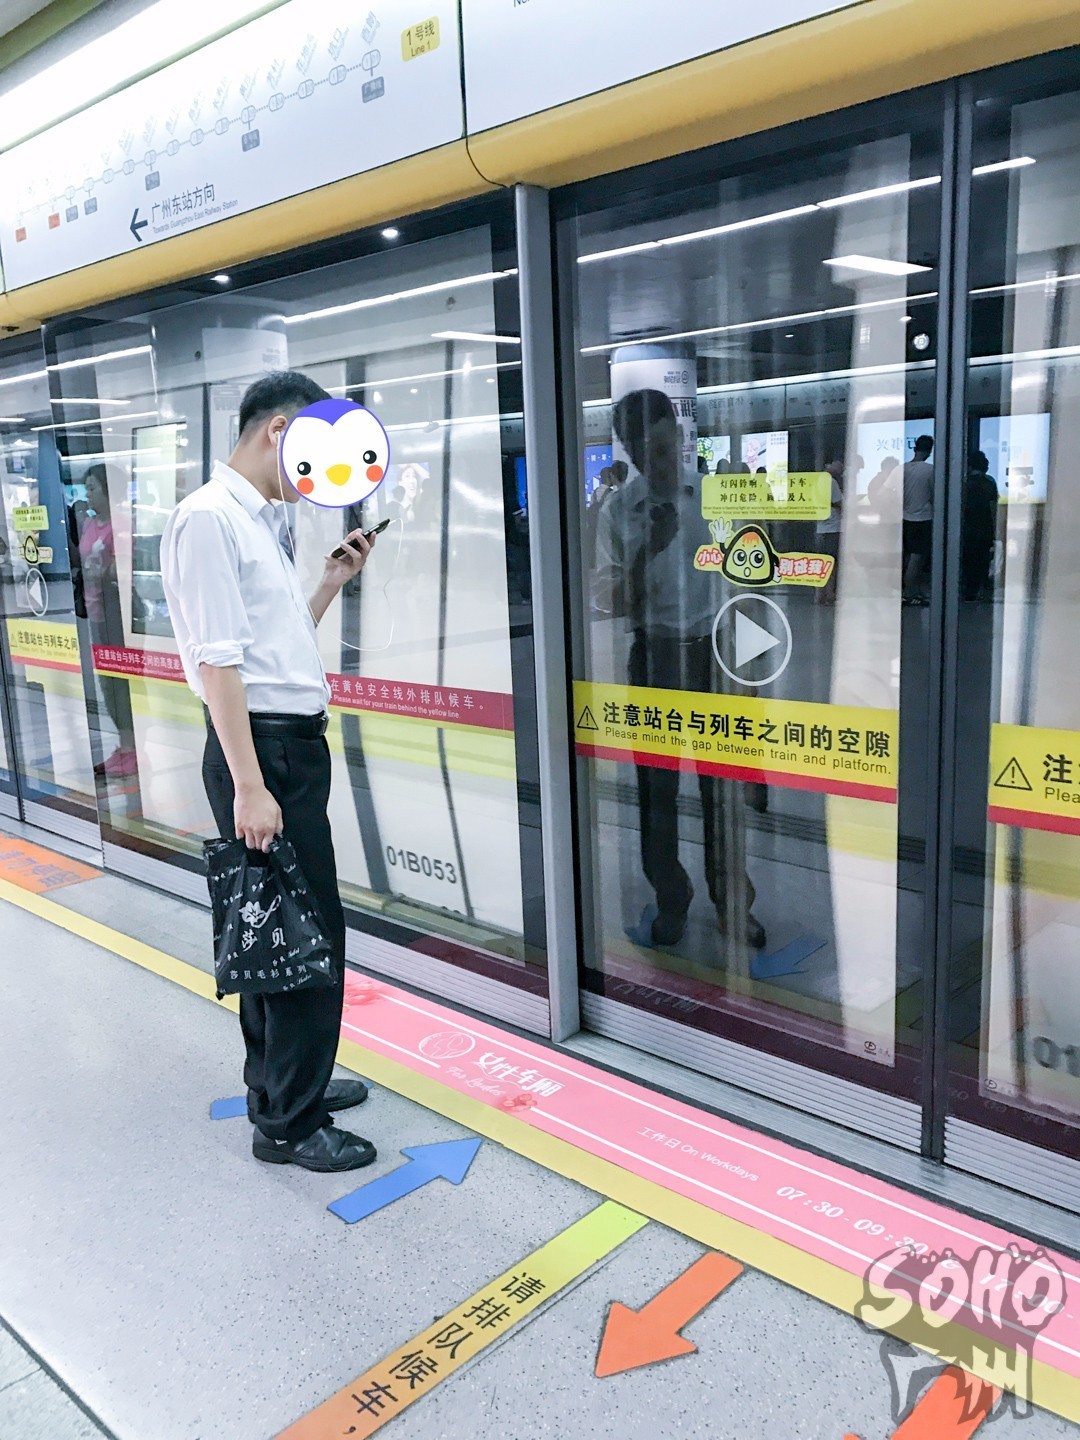 尴尬!广州地铁"女性车厢"试行第一天,亲自体验看到的却是